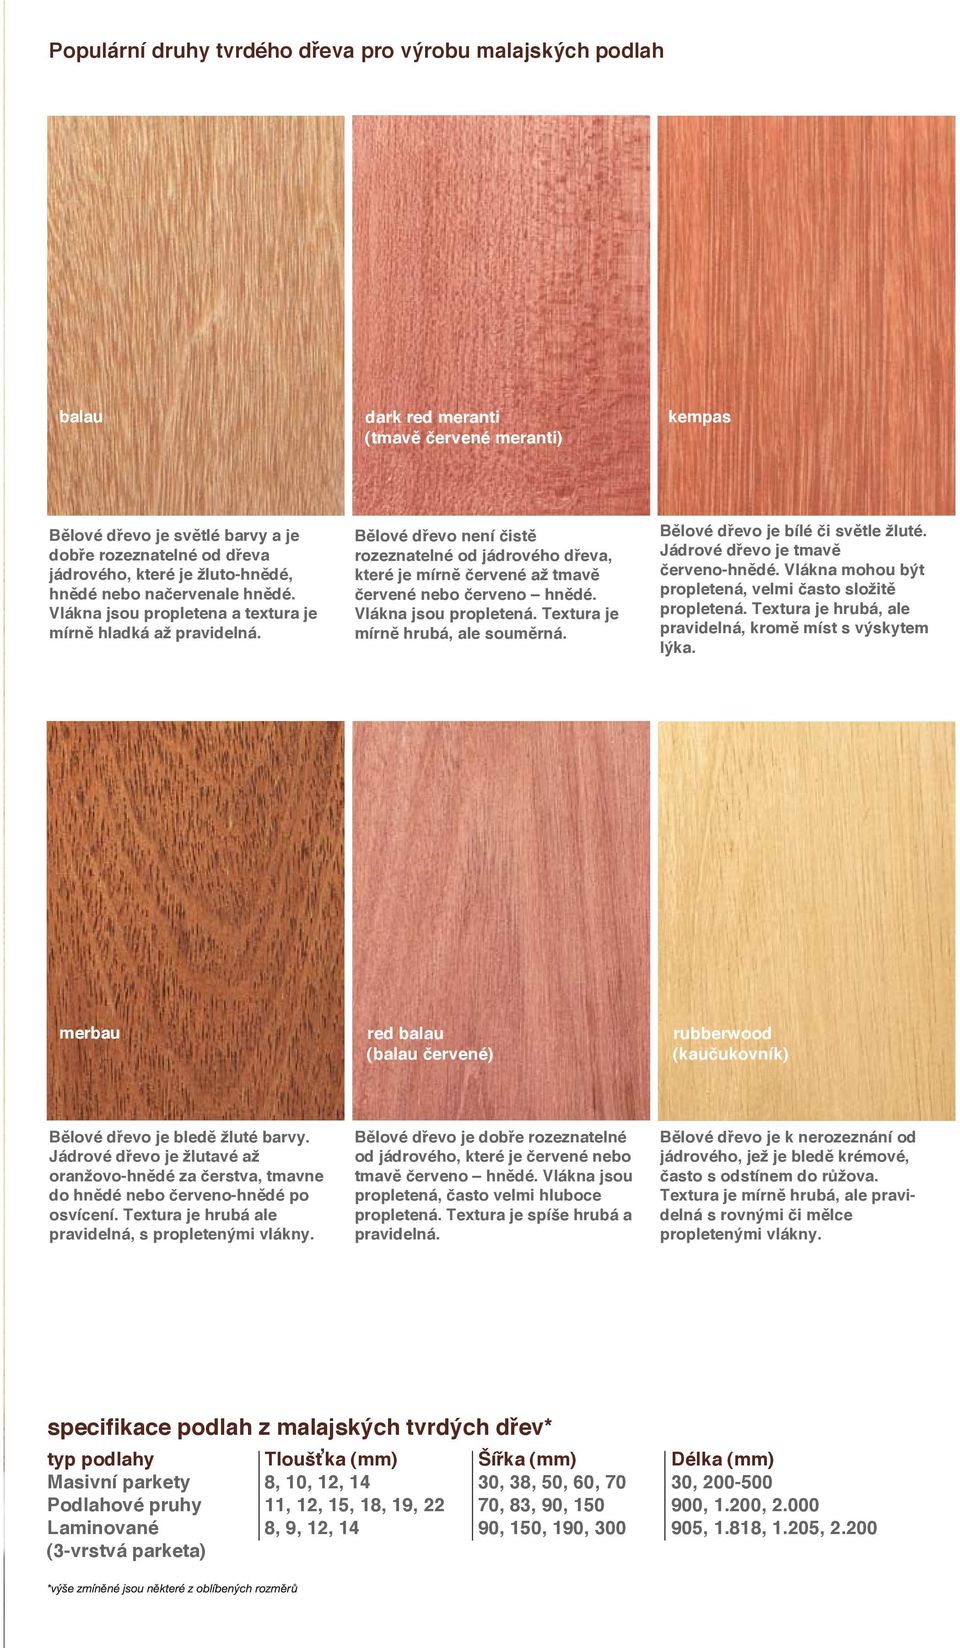 Bělové dřevo není čistě rozeznatelné od jádrového dřeva, které je mírně červené až tmavě červené nebo červeno hnědé. Vlákna jsou propletená. Textura je mírně hrubá, ale souměrná.